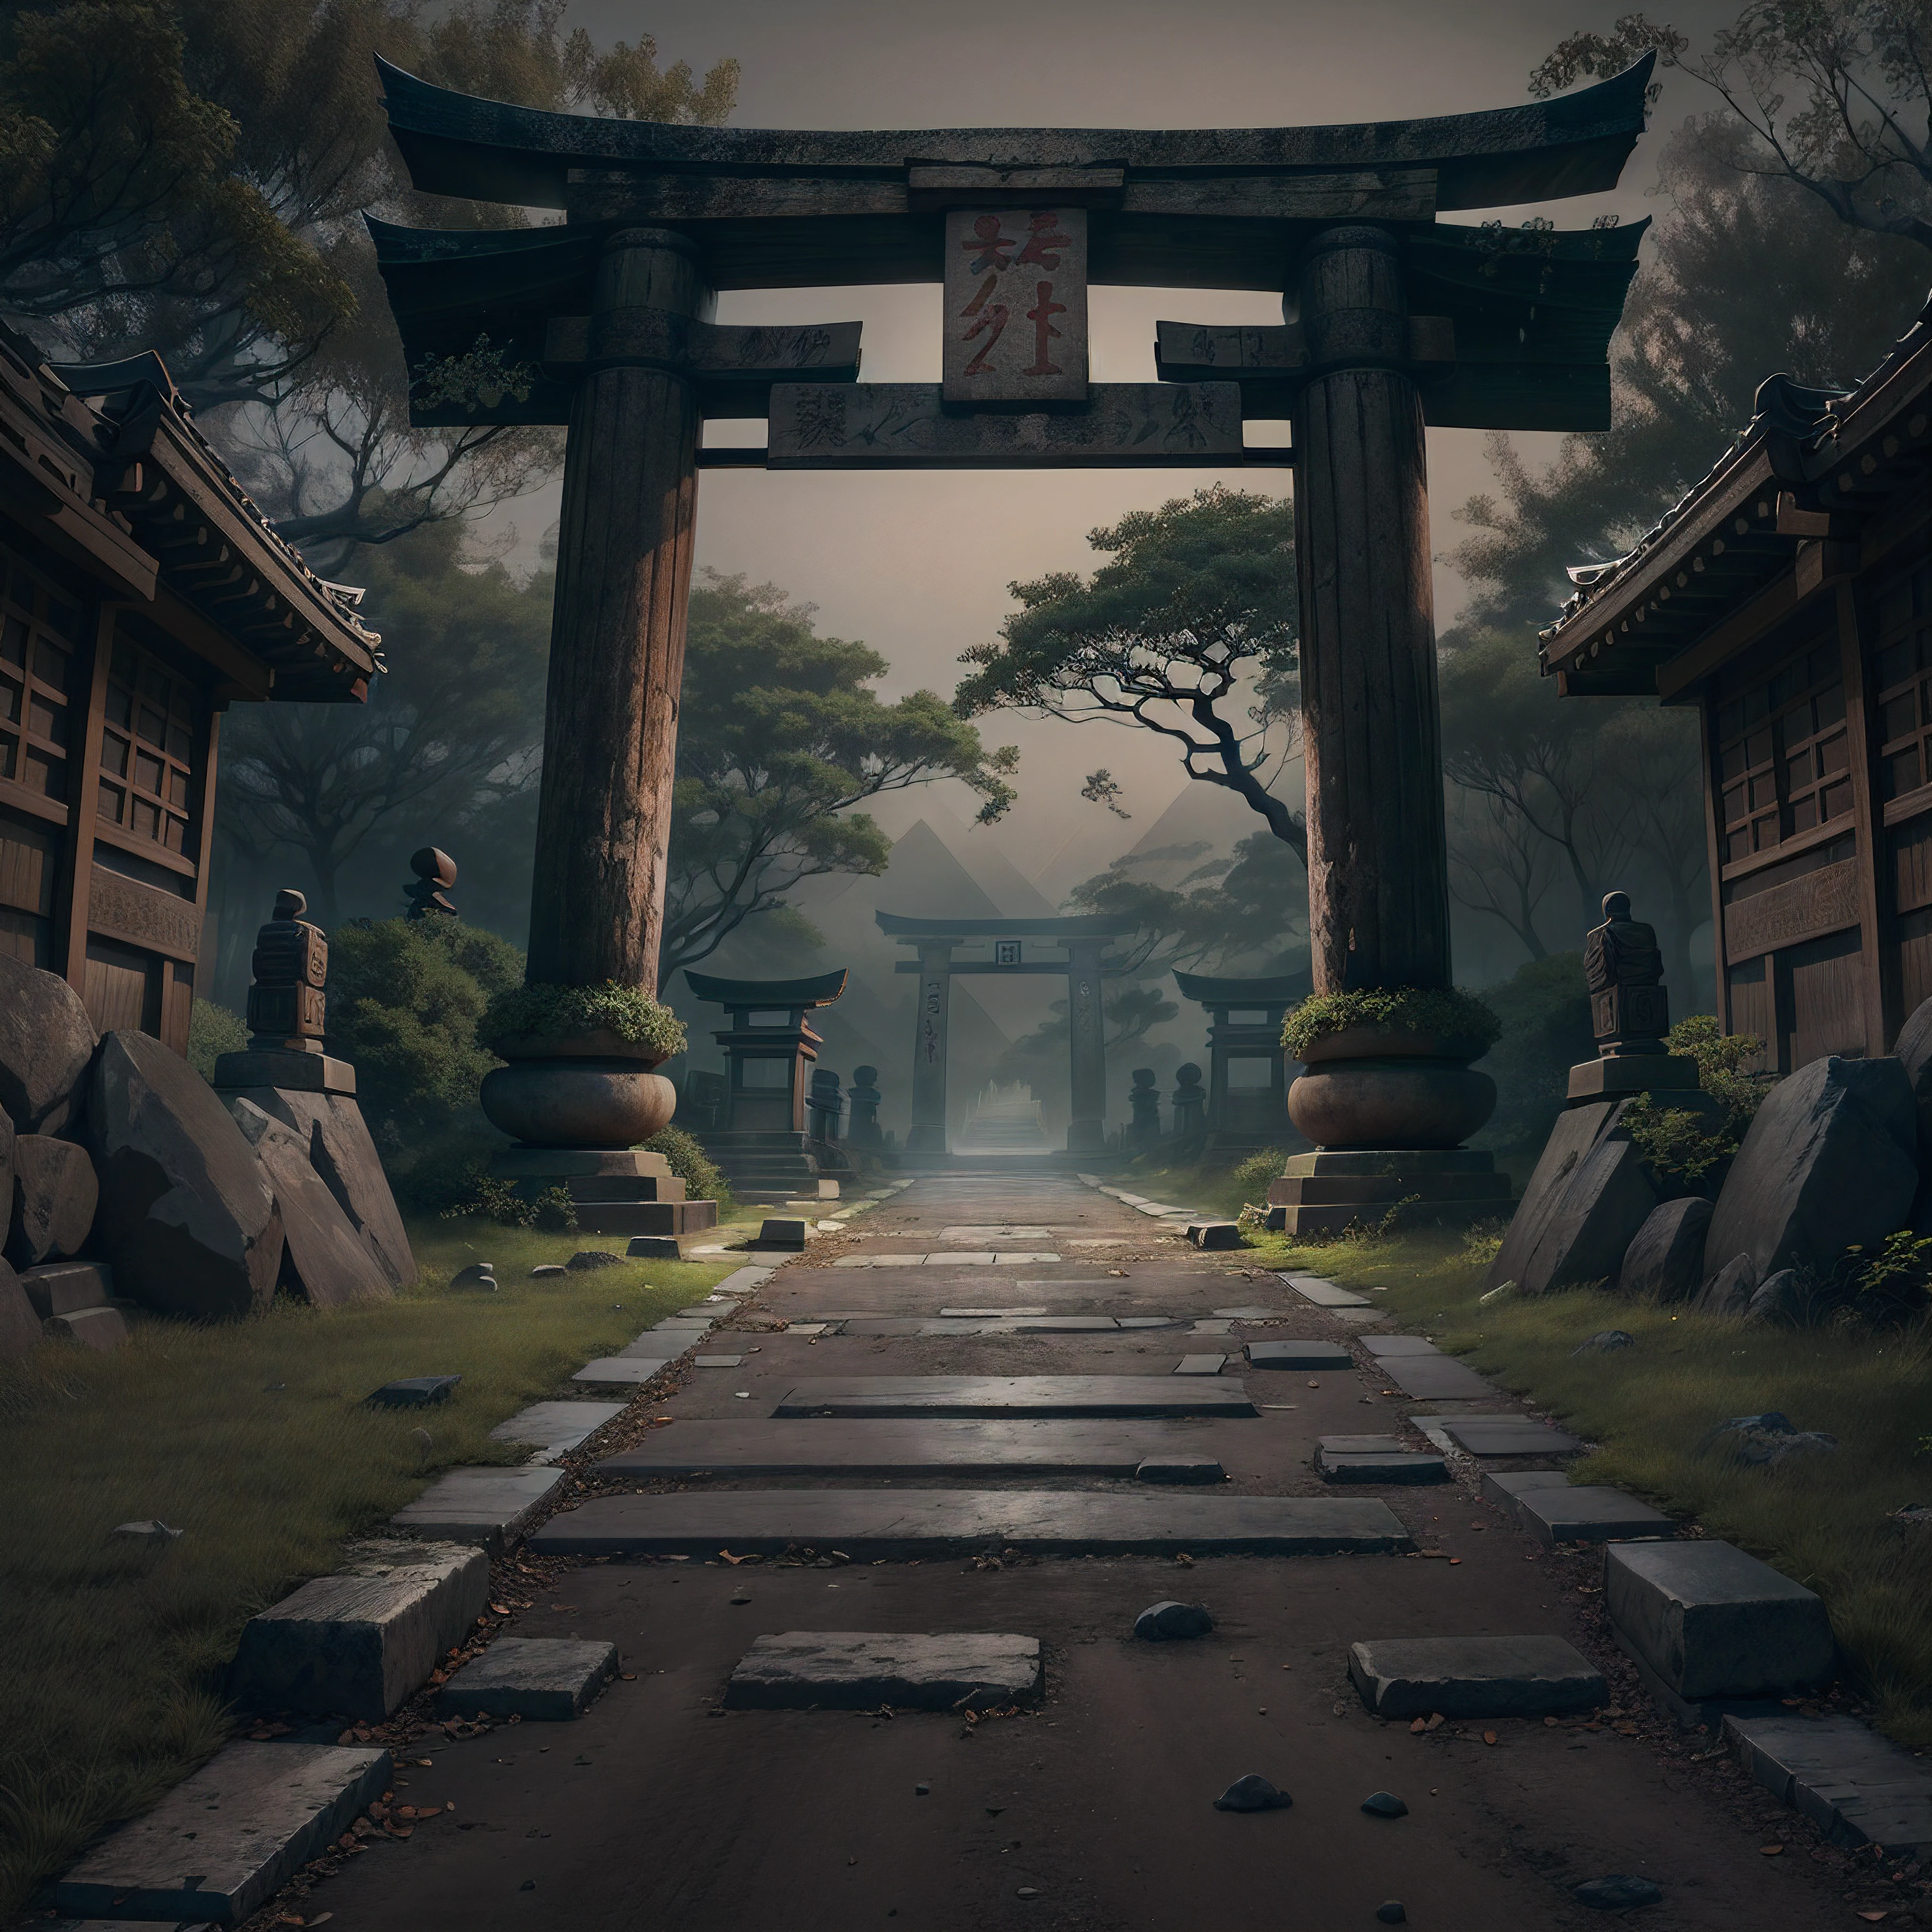 Créez un chemin sombre avec des éléments japonais et placez un vieux torii-gate au début de celui-ci et à la fin en arrière-plan placez les pyramides de Gizeh.